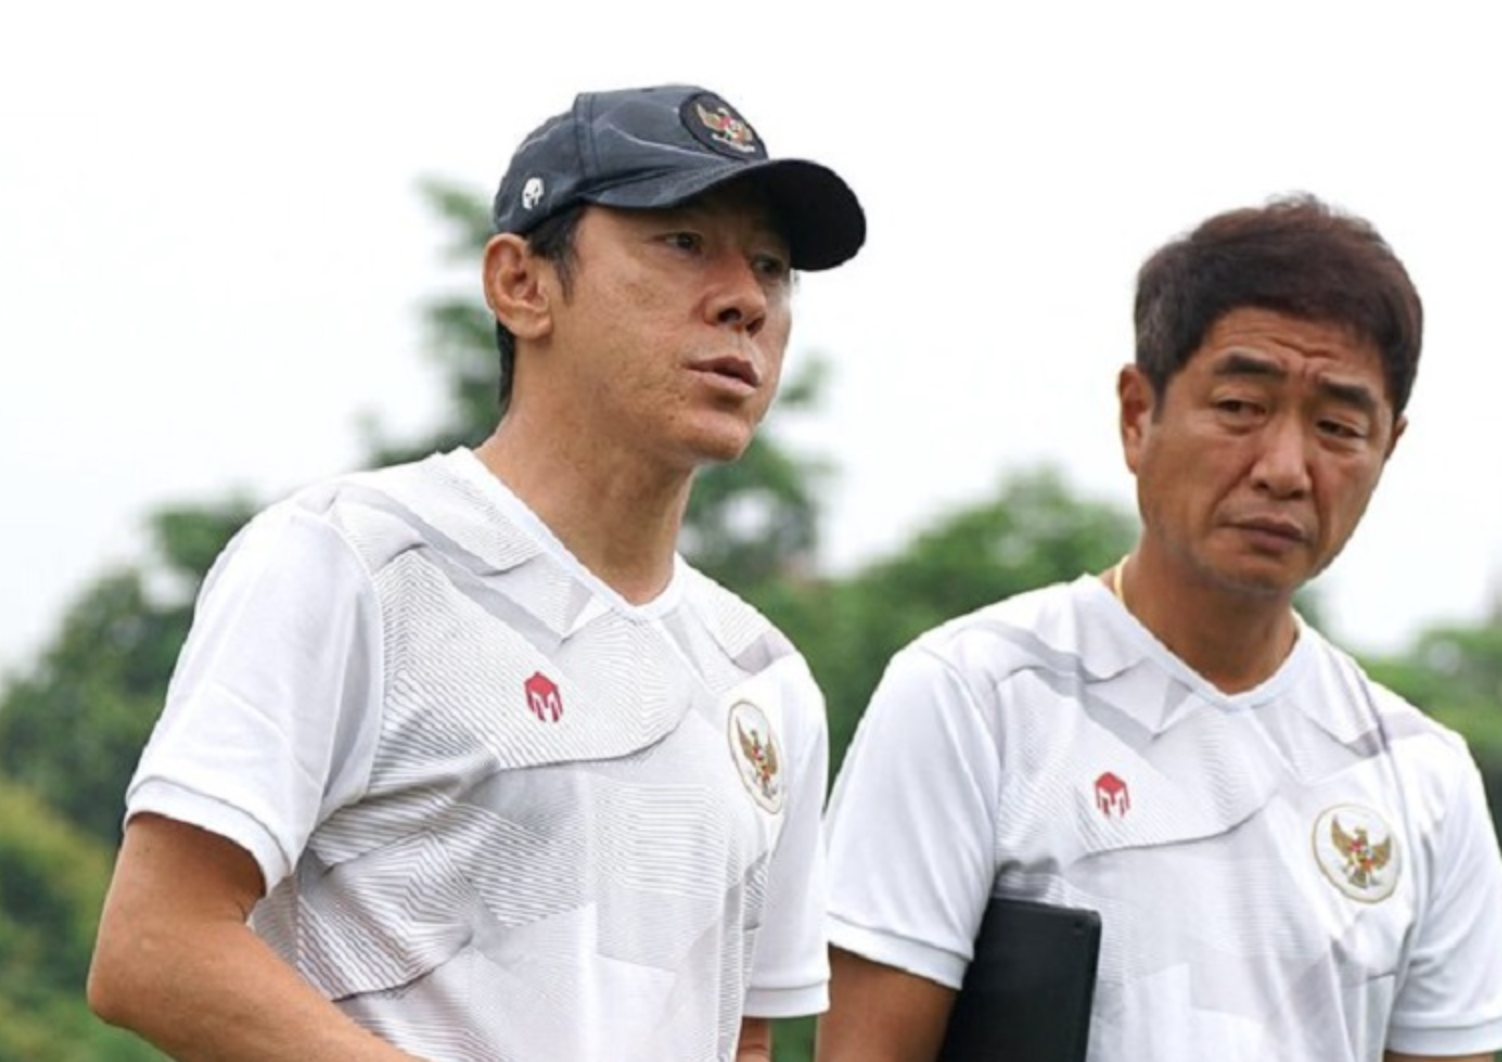 HLV Shin Tae-yong, người chỉ đạo cho đội tuyển U.19, đã loại 3 cầu thủ gốc ngoại khỏi đội hình. Quyết định này đã gây tiếng vang lớn trên truyền thông. Tuy nhiên, đội bóng vẫn đang tiếp tục trên con đường phát triển với tinh thần quyết tâm.